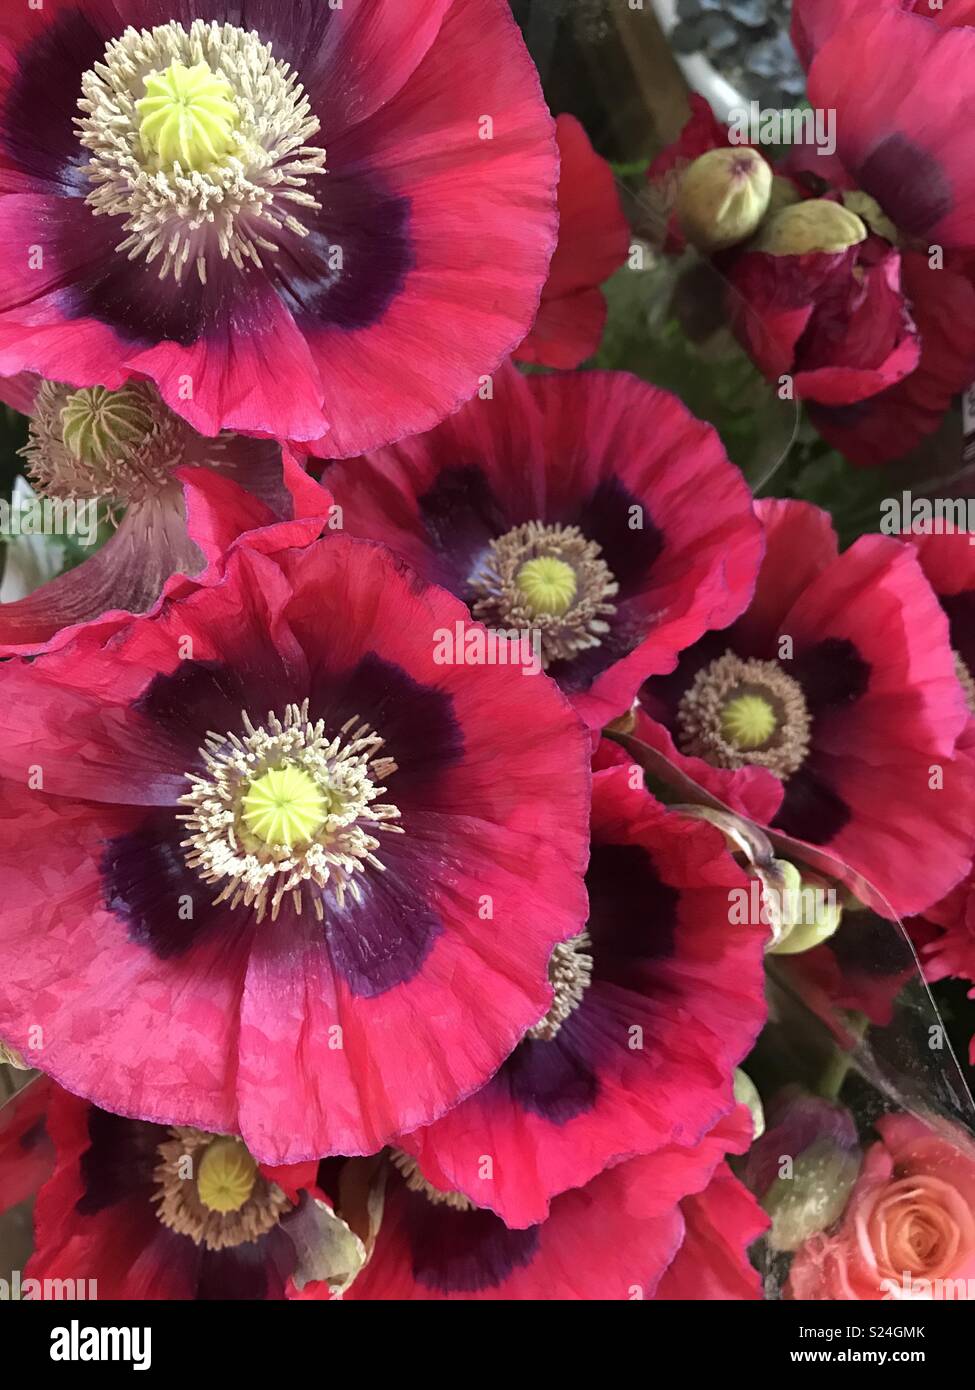 Vibrant poppies Stock Photo